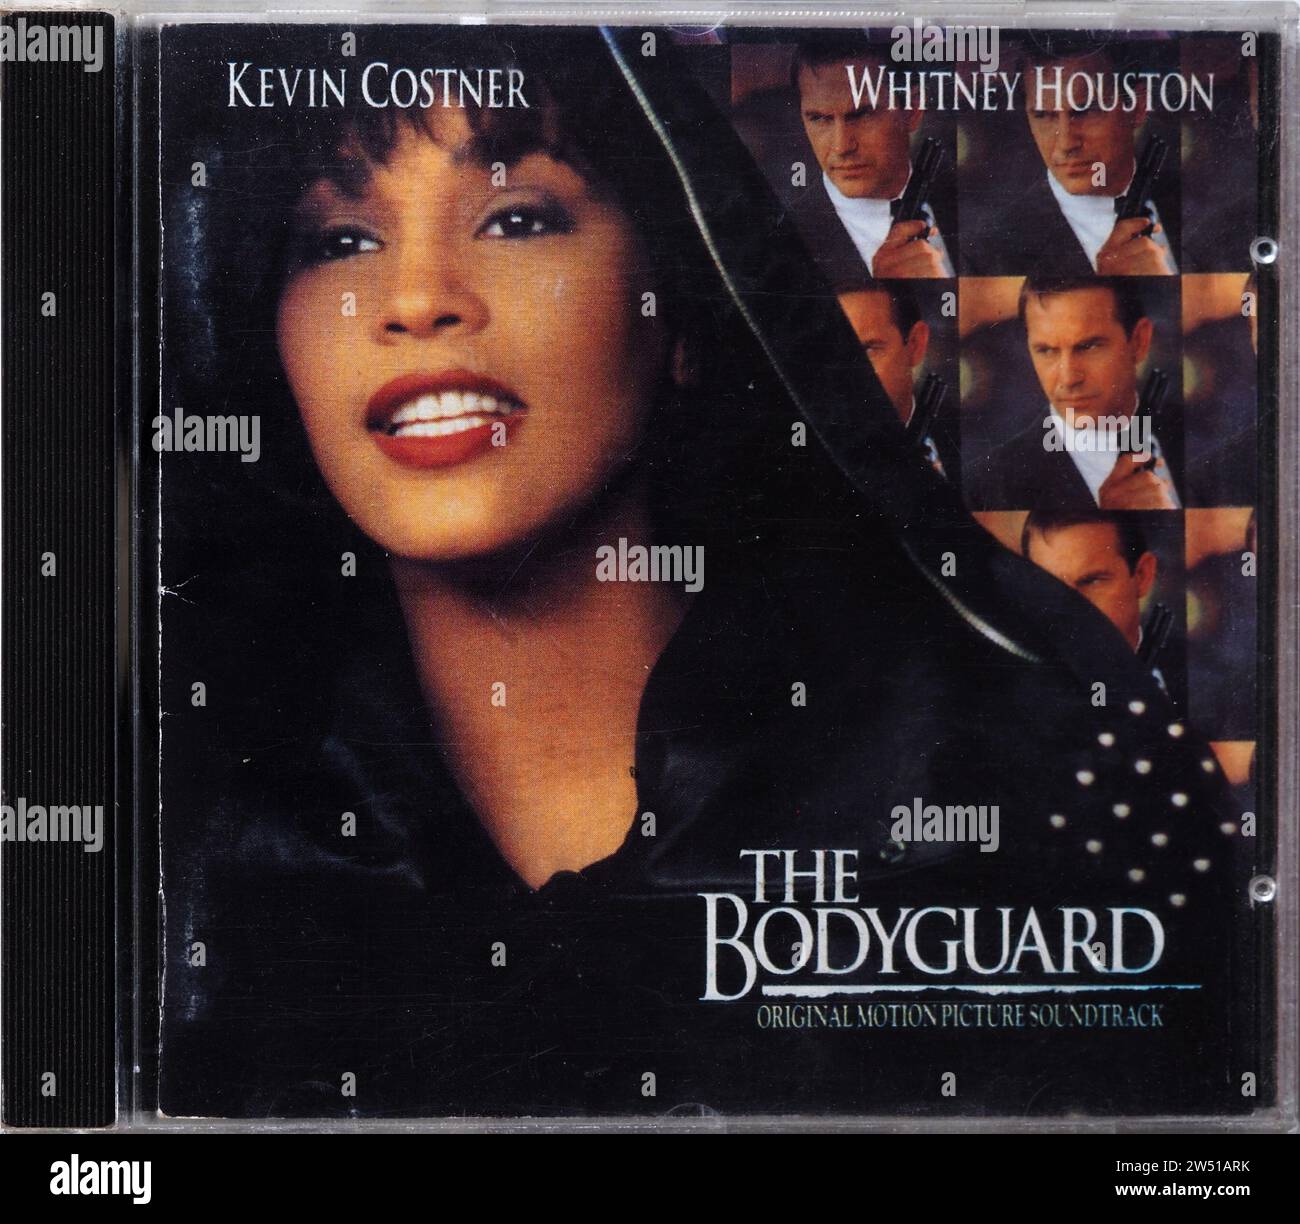 In questa immagine, il CD (compact disk) della colonna sonora originale del film del Bodyguard. Questo film vede come protagonisti Kevin Costner e Whitney Houston. Tutte le canzoni sono state eseguite da Whitney Houston. Foto Stock